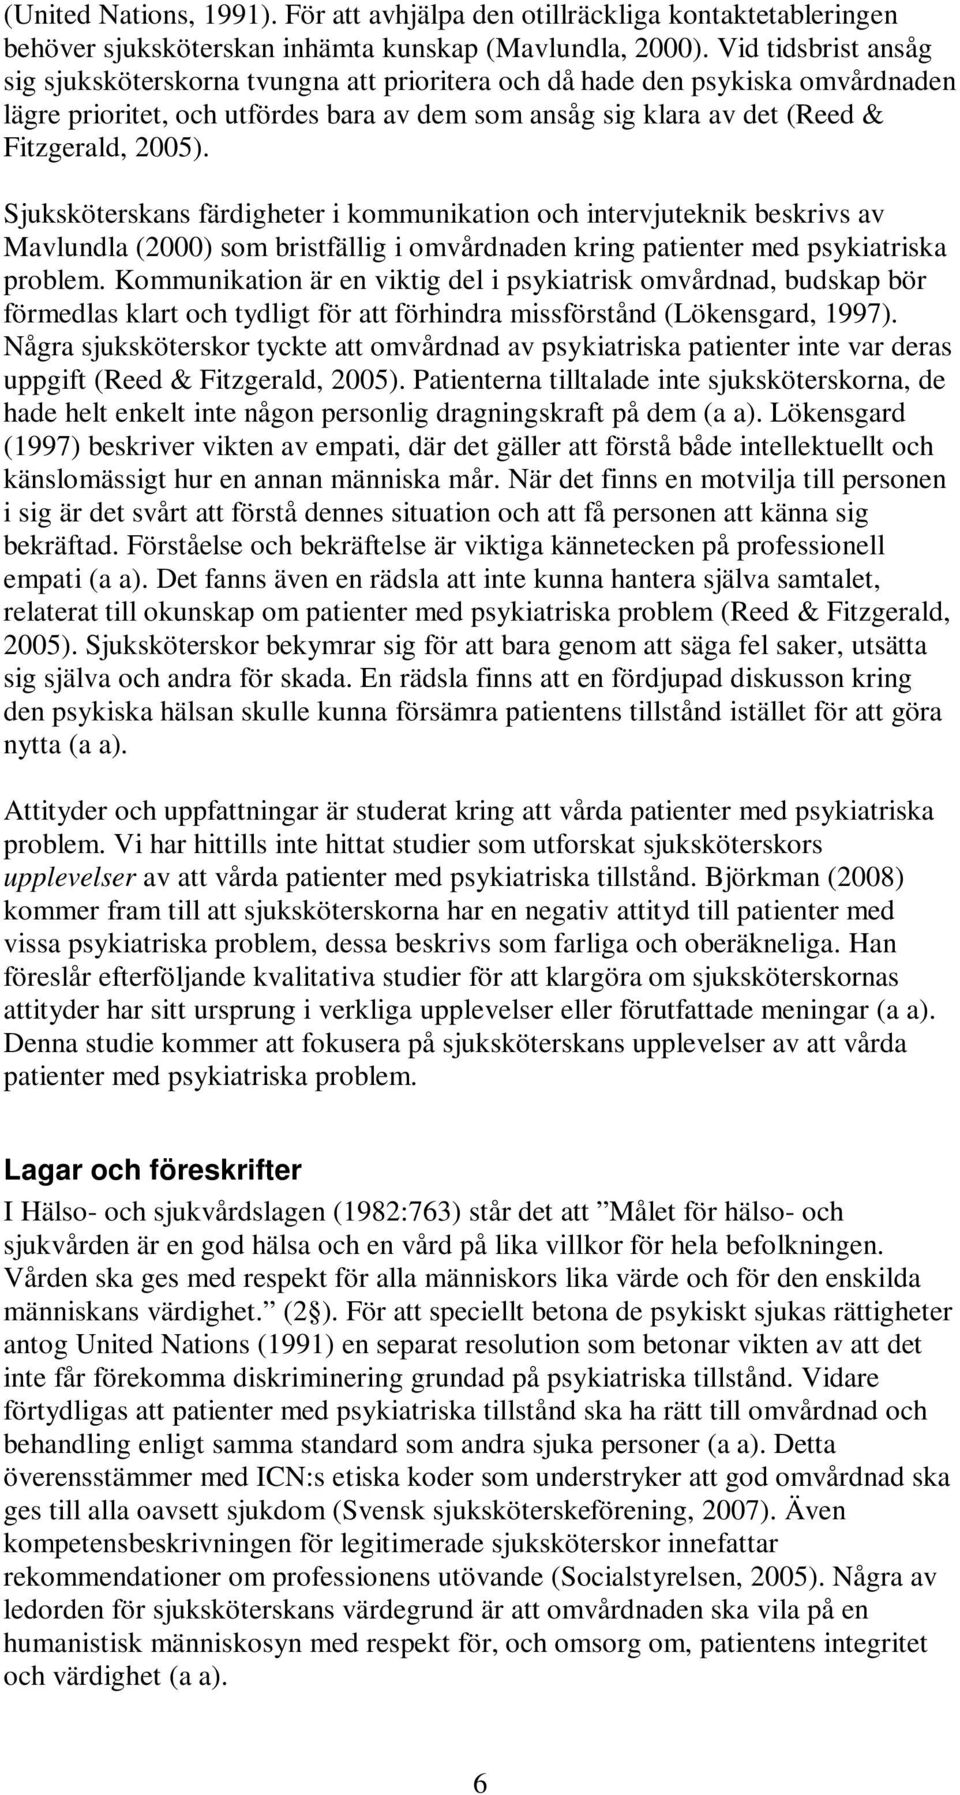 Sjuksköterskans färdigheter i kommunikation och intervjuteknik beskrivs av Mavlundla (2000) som bristfällig i omvårdnaden kring patienter med psykiatriska problem.